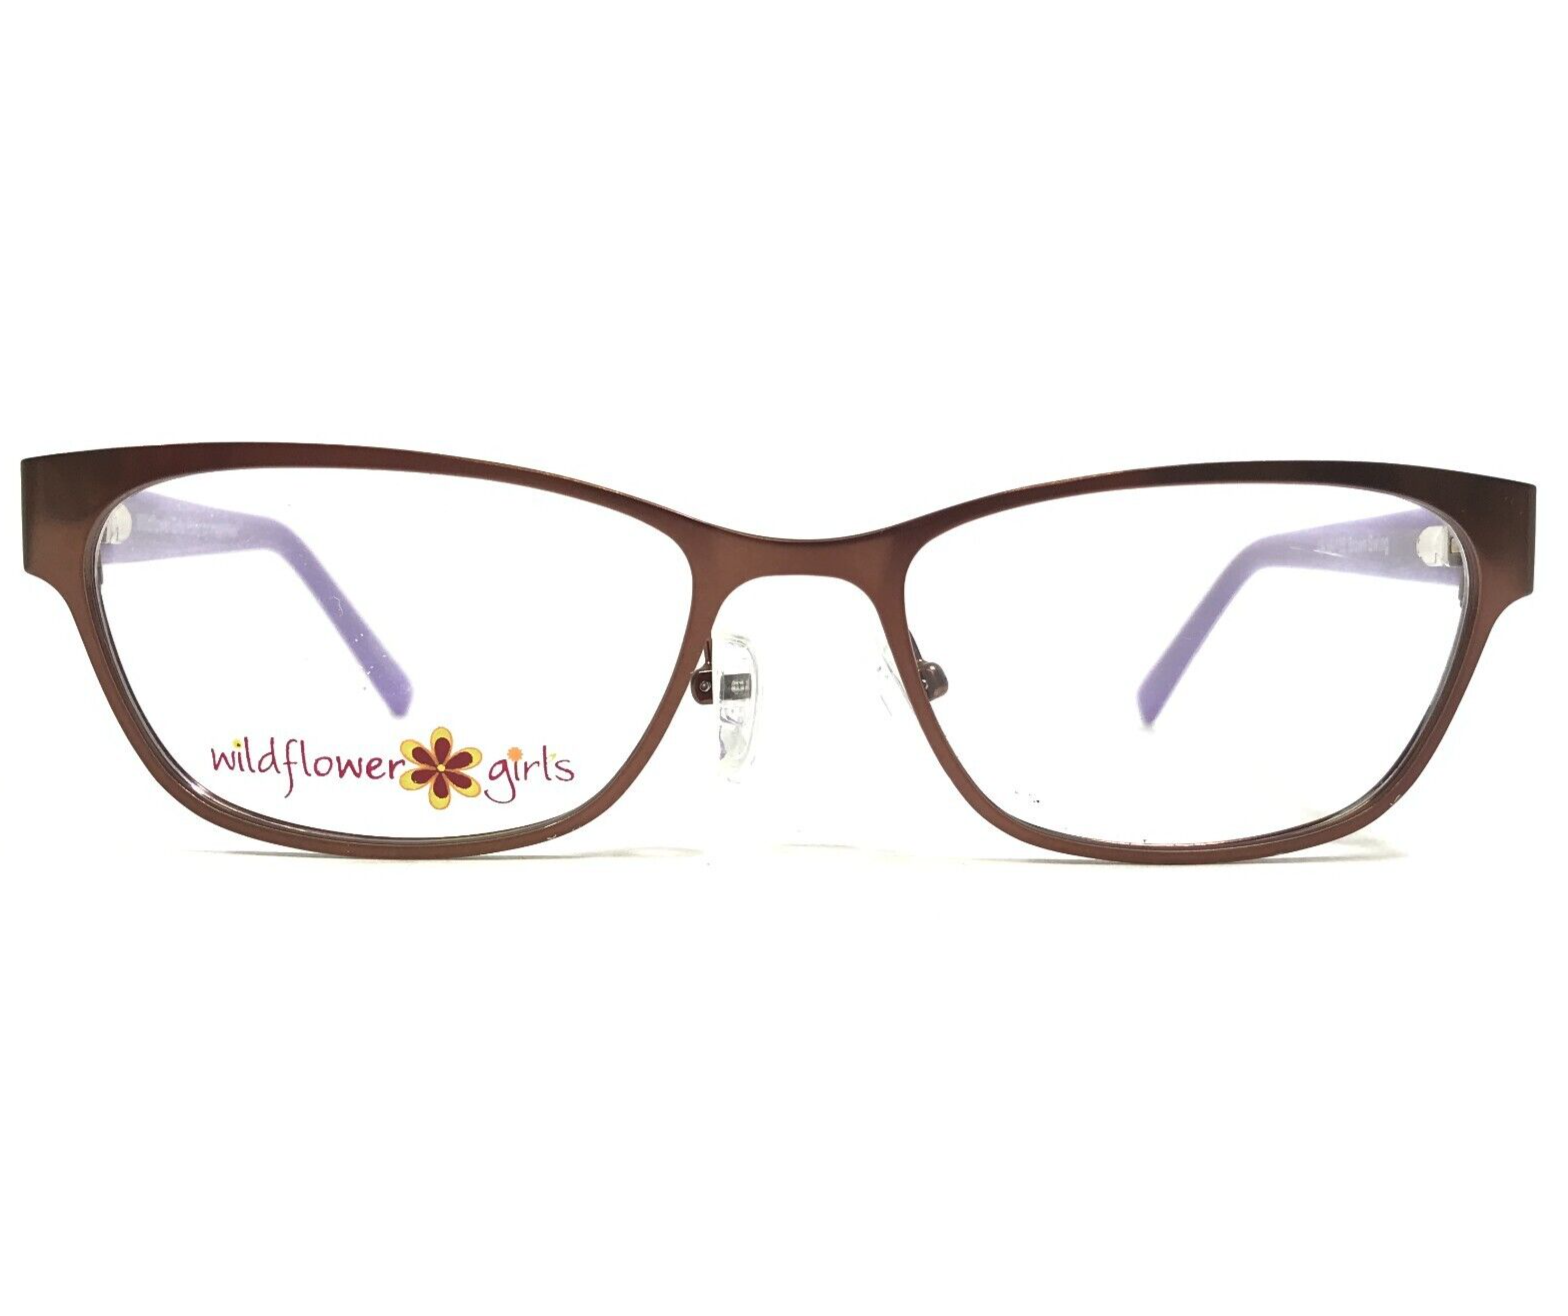 Primary image for Imagewear Kids Eyeglasses Frames Wildflower Girls Polly Rectangular 49-16-135